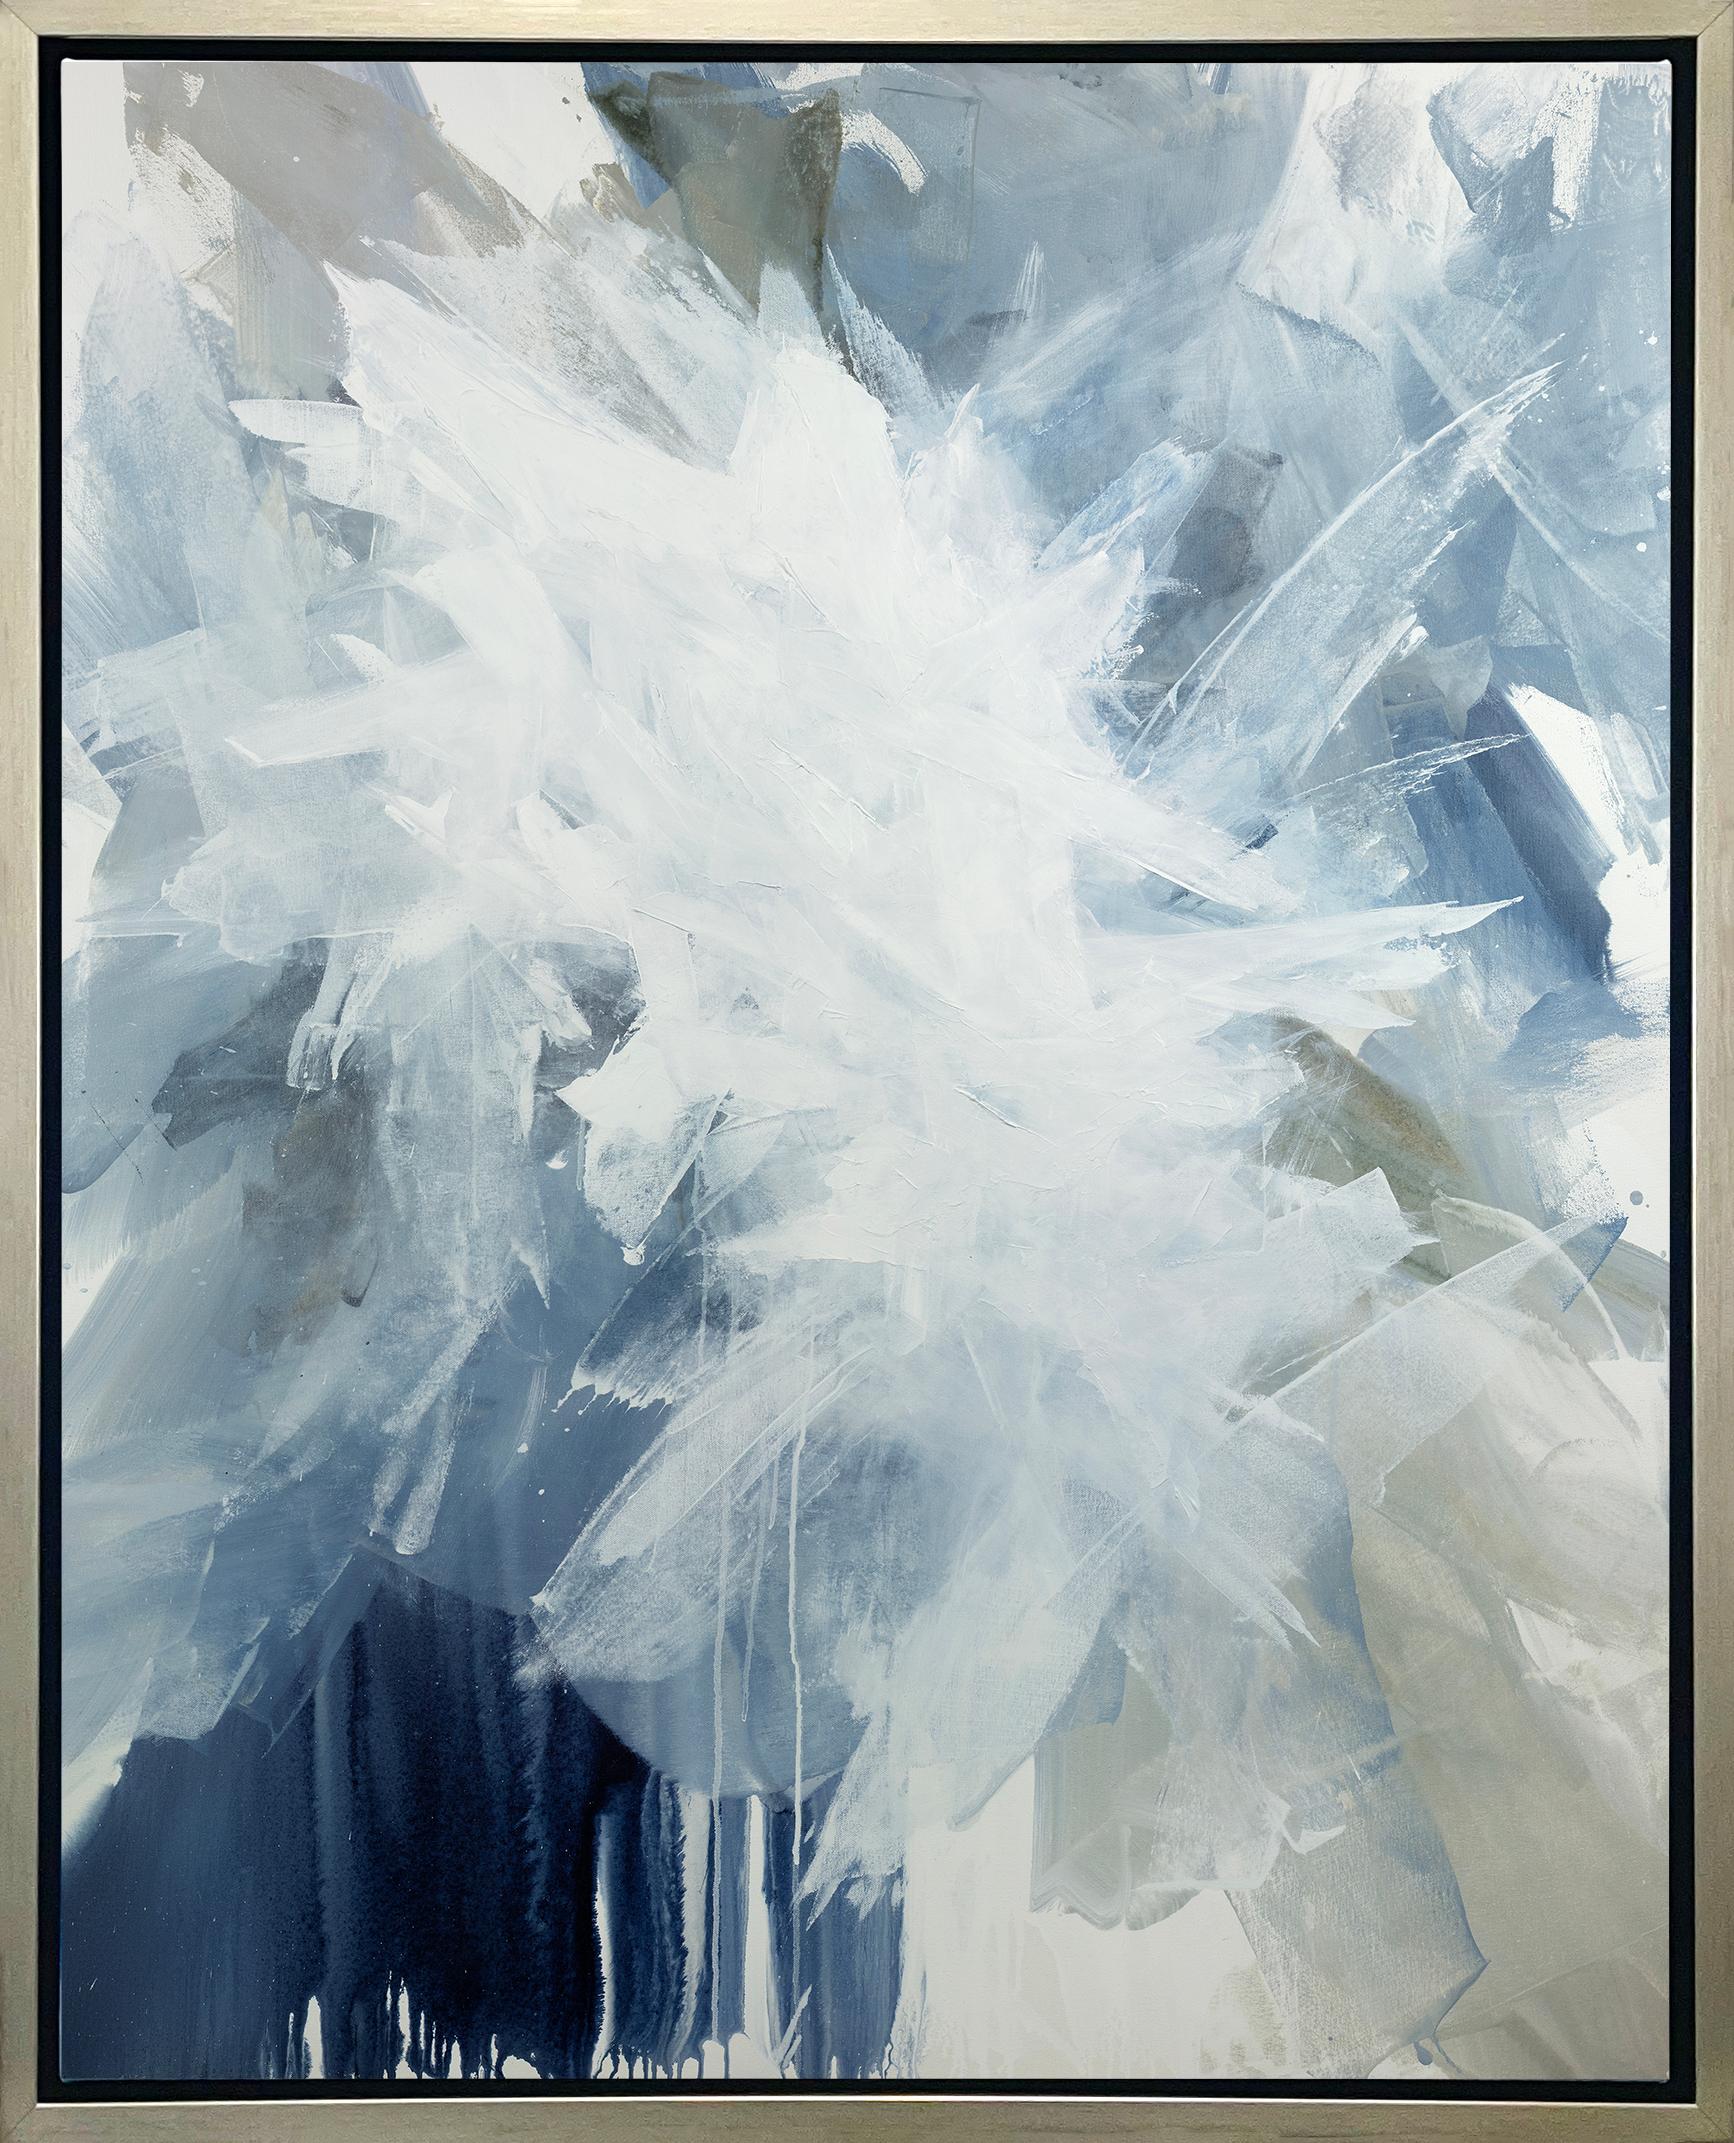 Teodora Guererra Abstract Print – ""Weiße Taube", gerahmter Giclee-Druck in limitierter Auflage, 60" x 48"